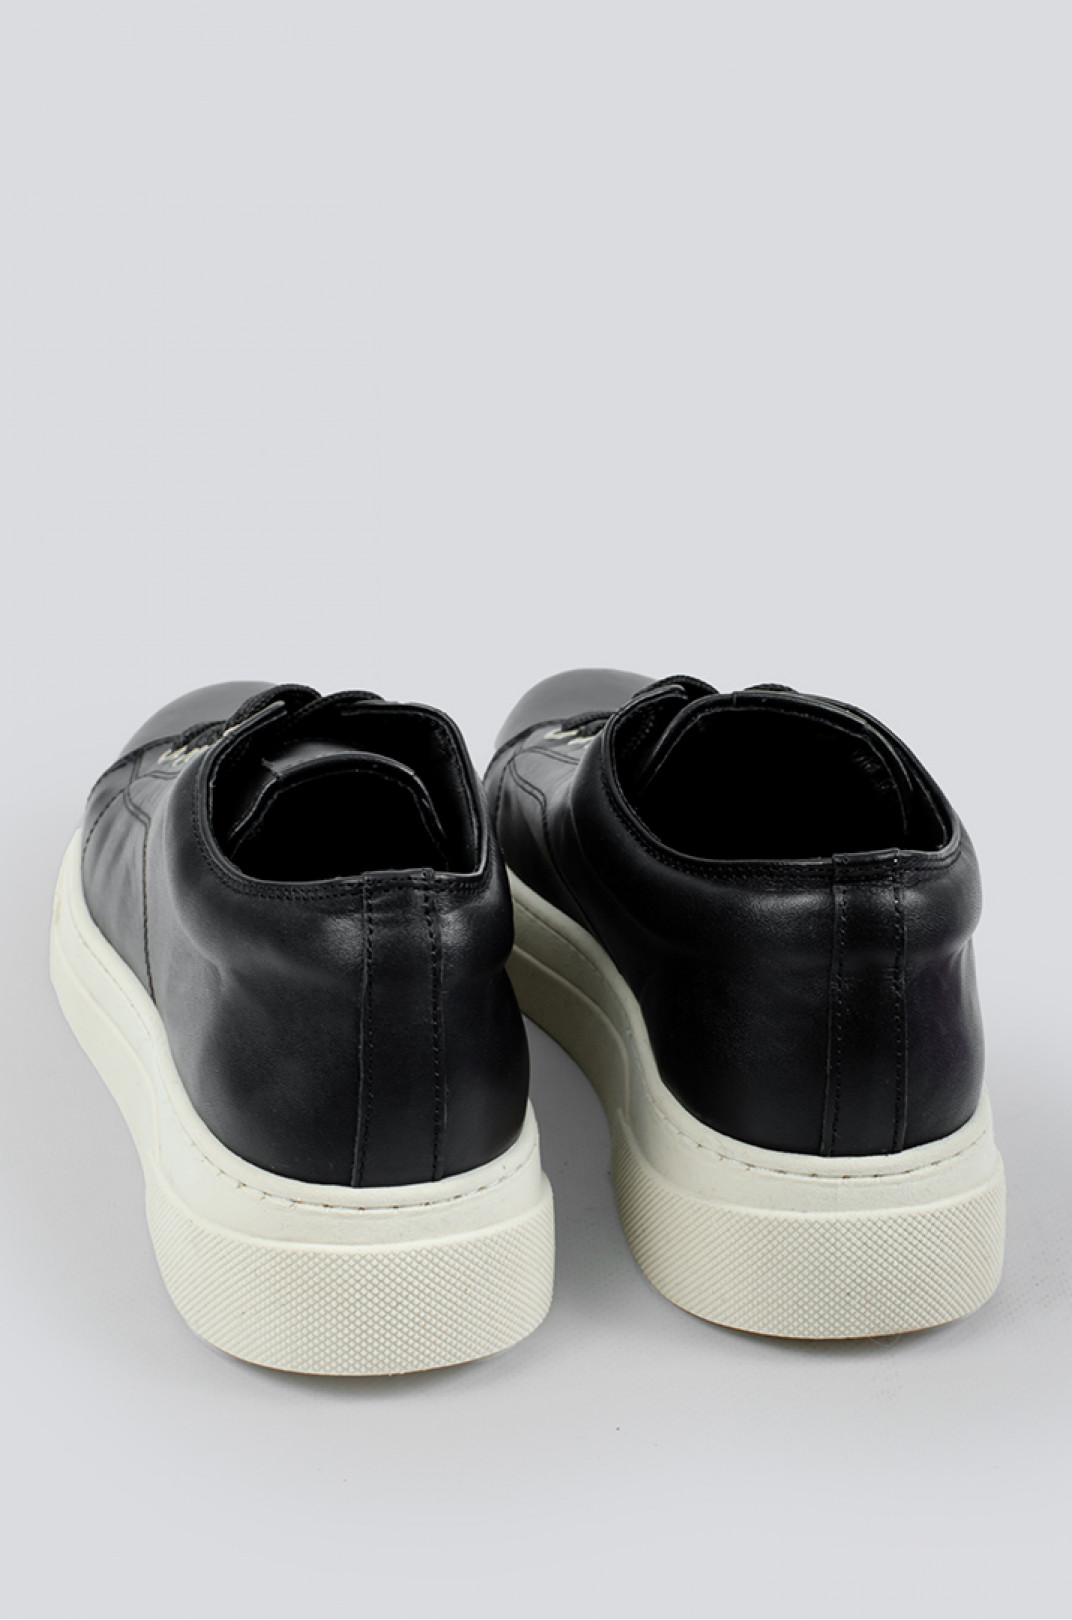 Кросівки чорні шкіряні зі світлою підошвою великих розмірів